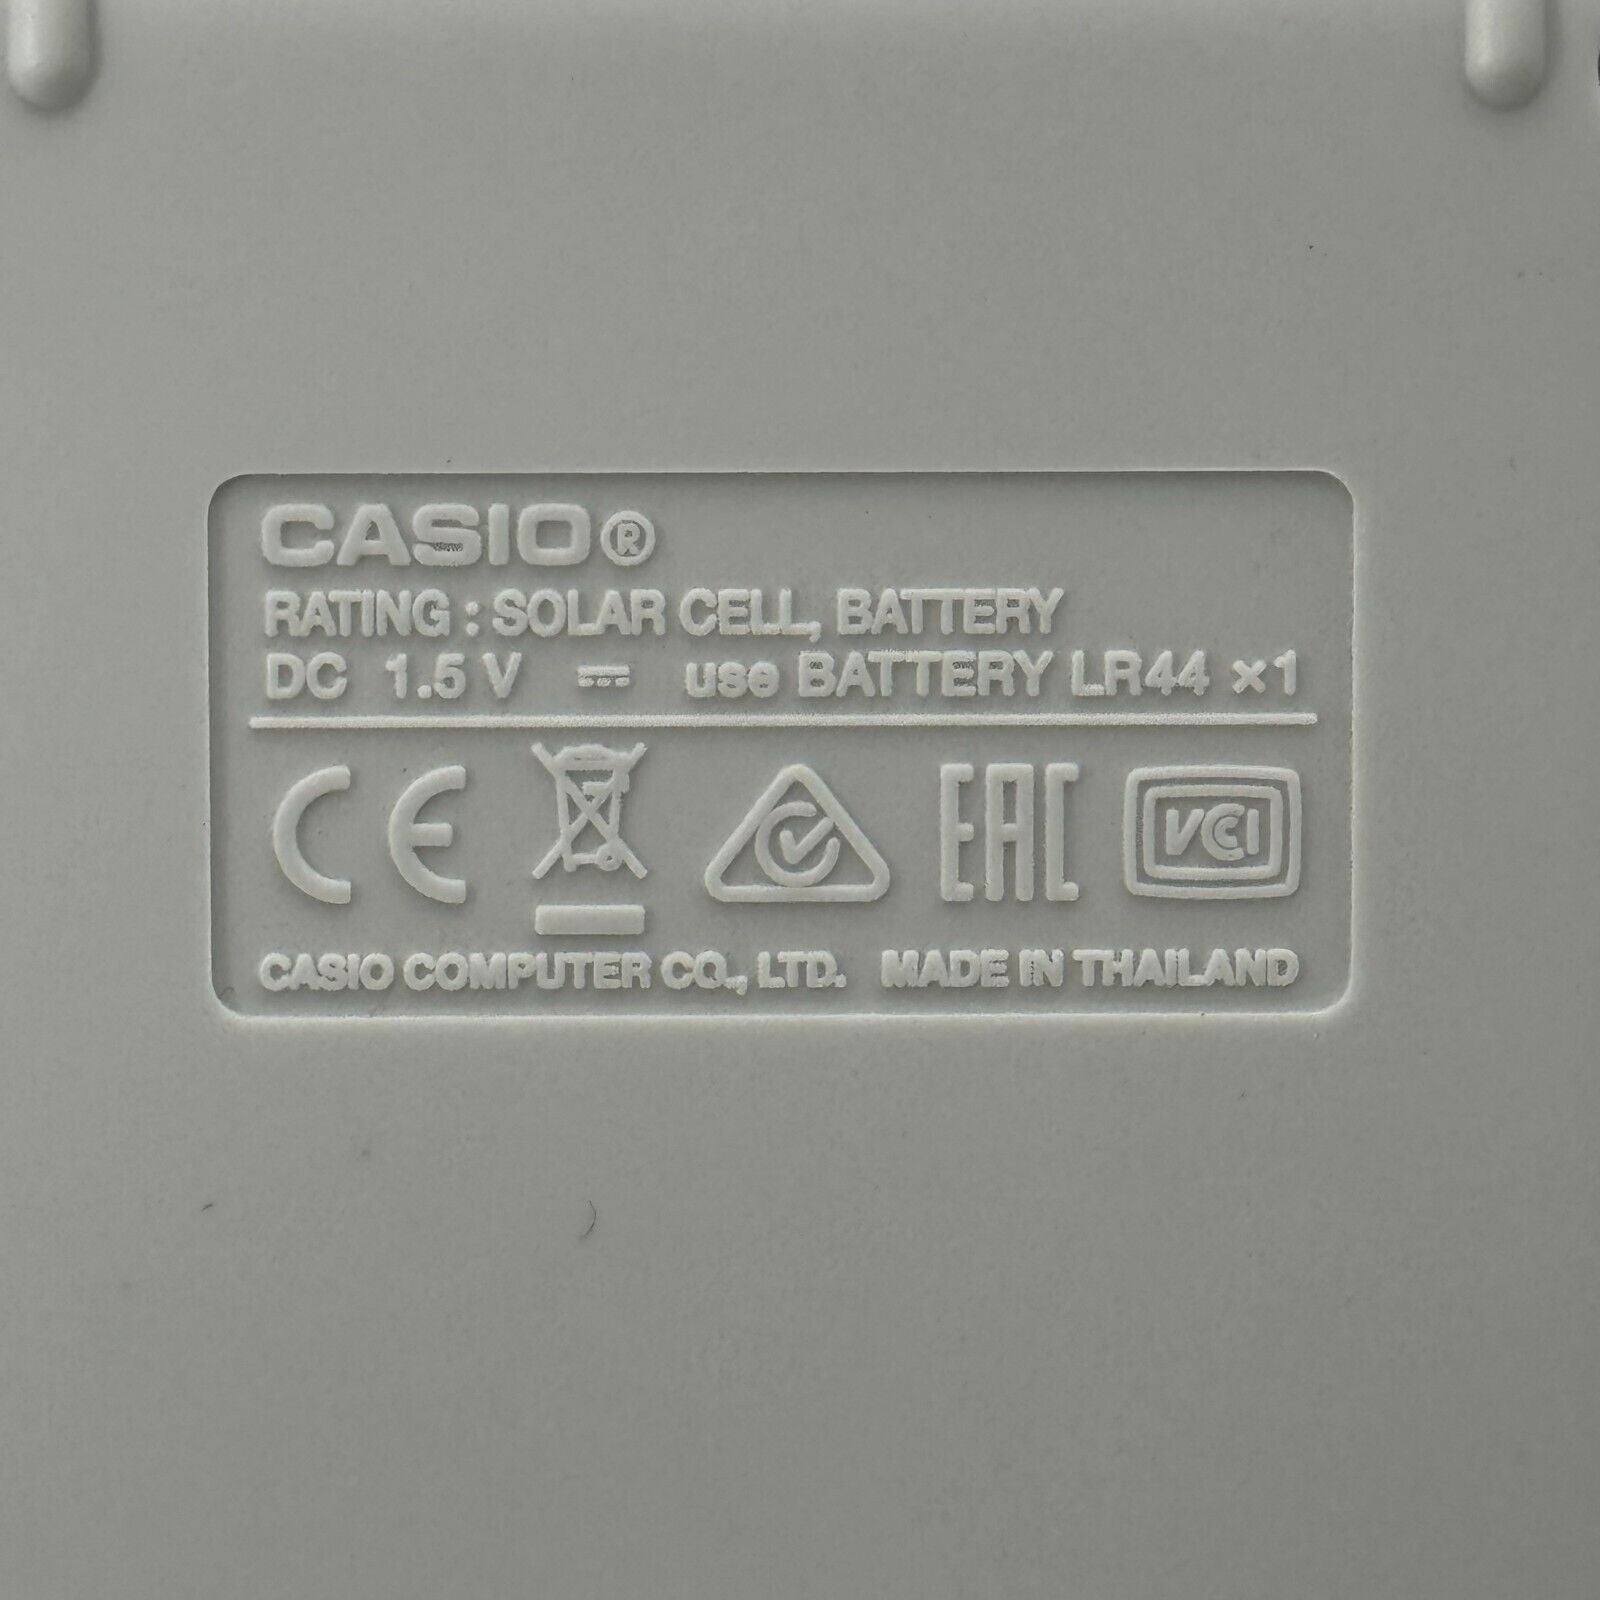 CASIO FX-115ES PLUS Scientific Natural Textbook Display Solar Calculator & Cover